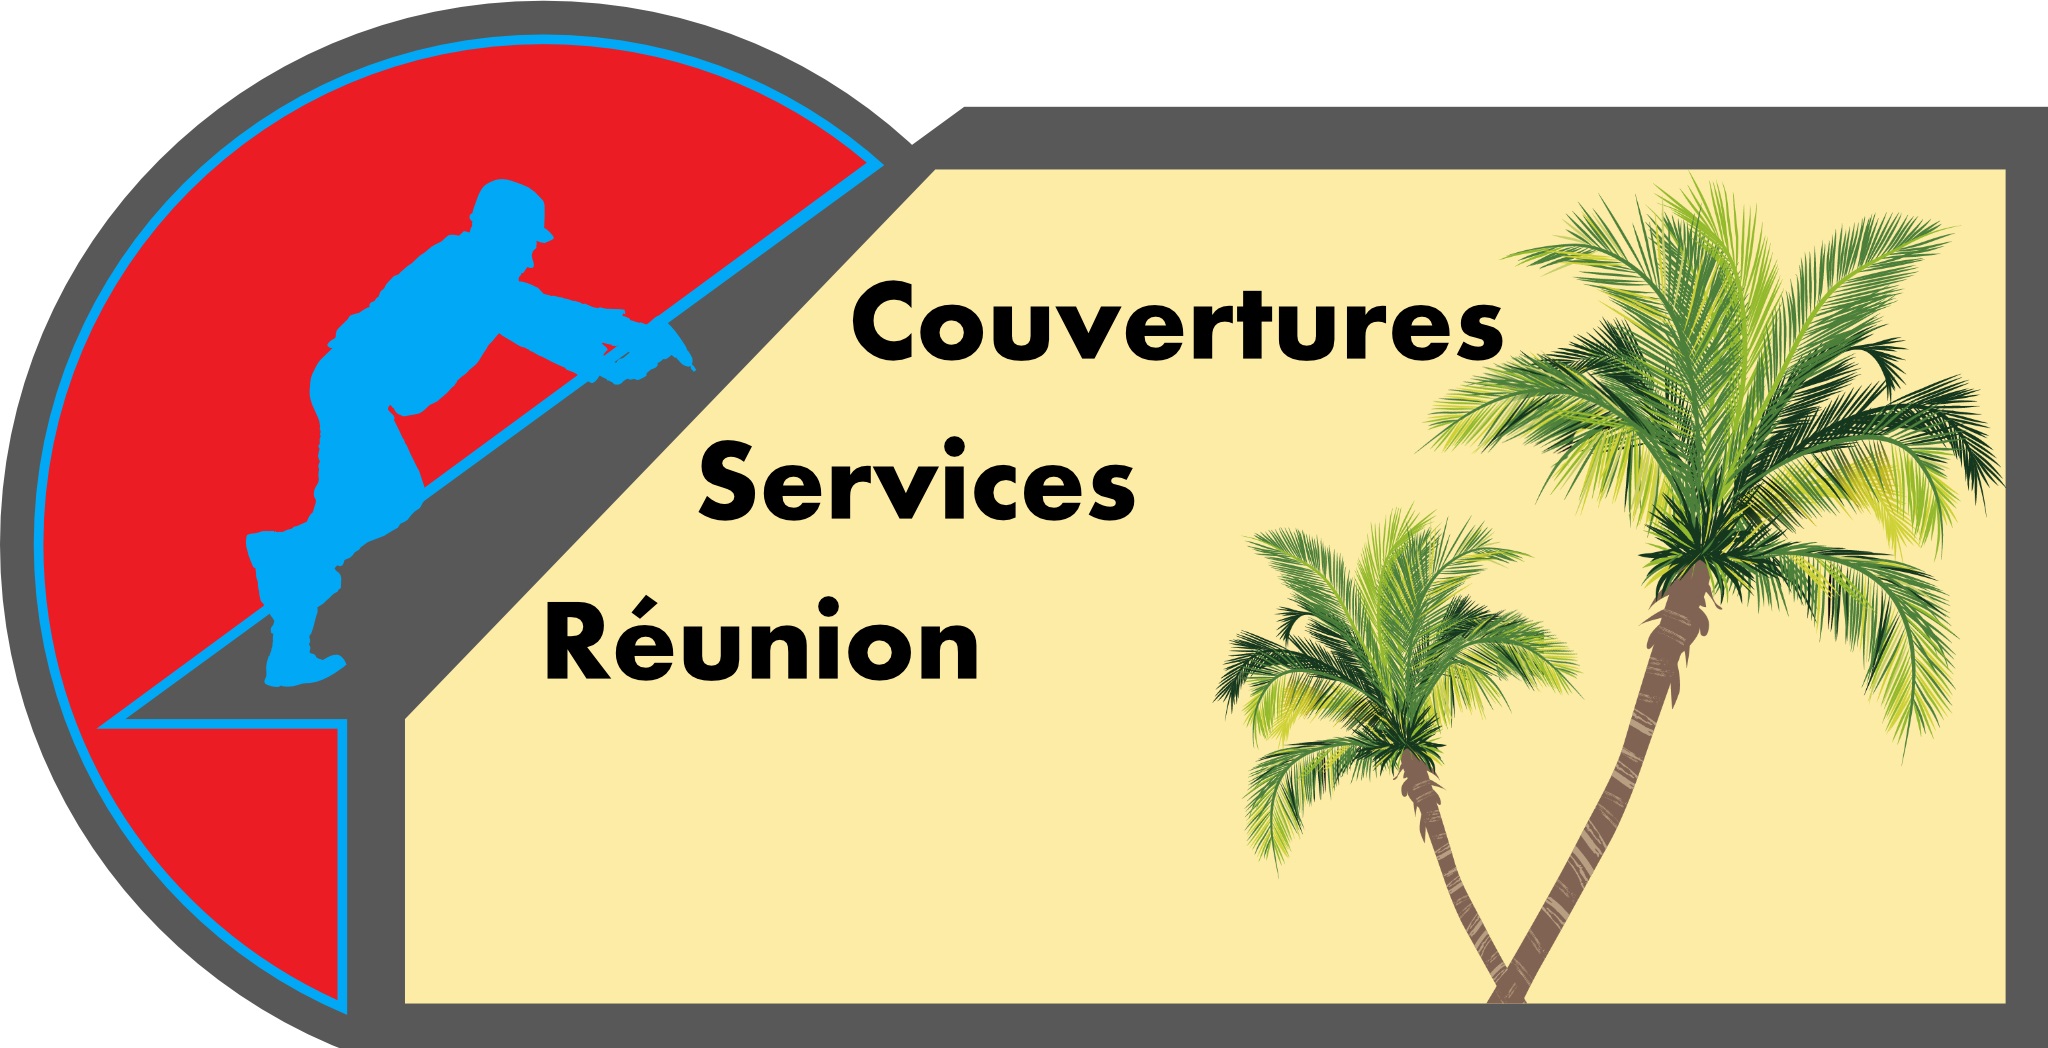 COUVERTURES SERVICES REUNION